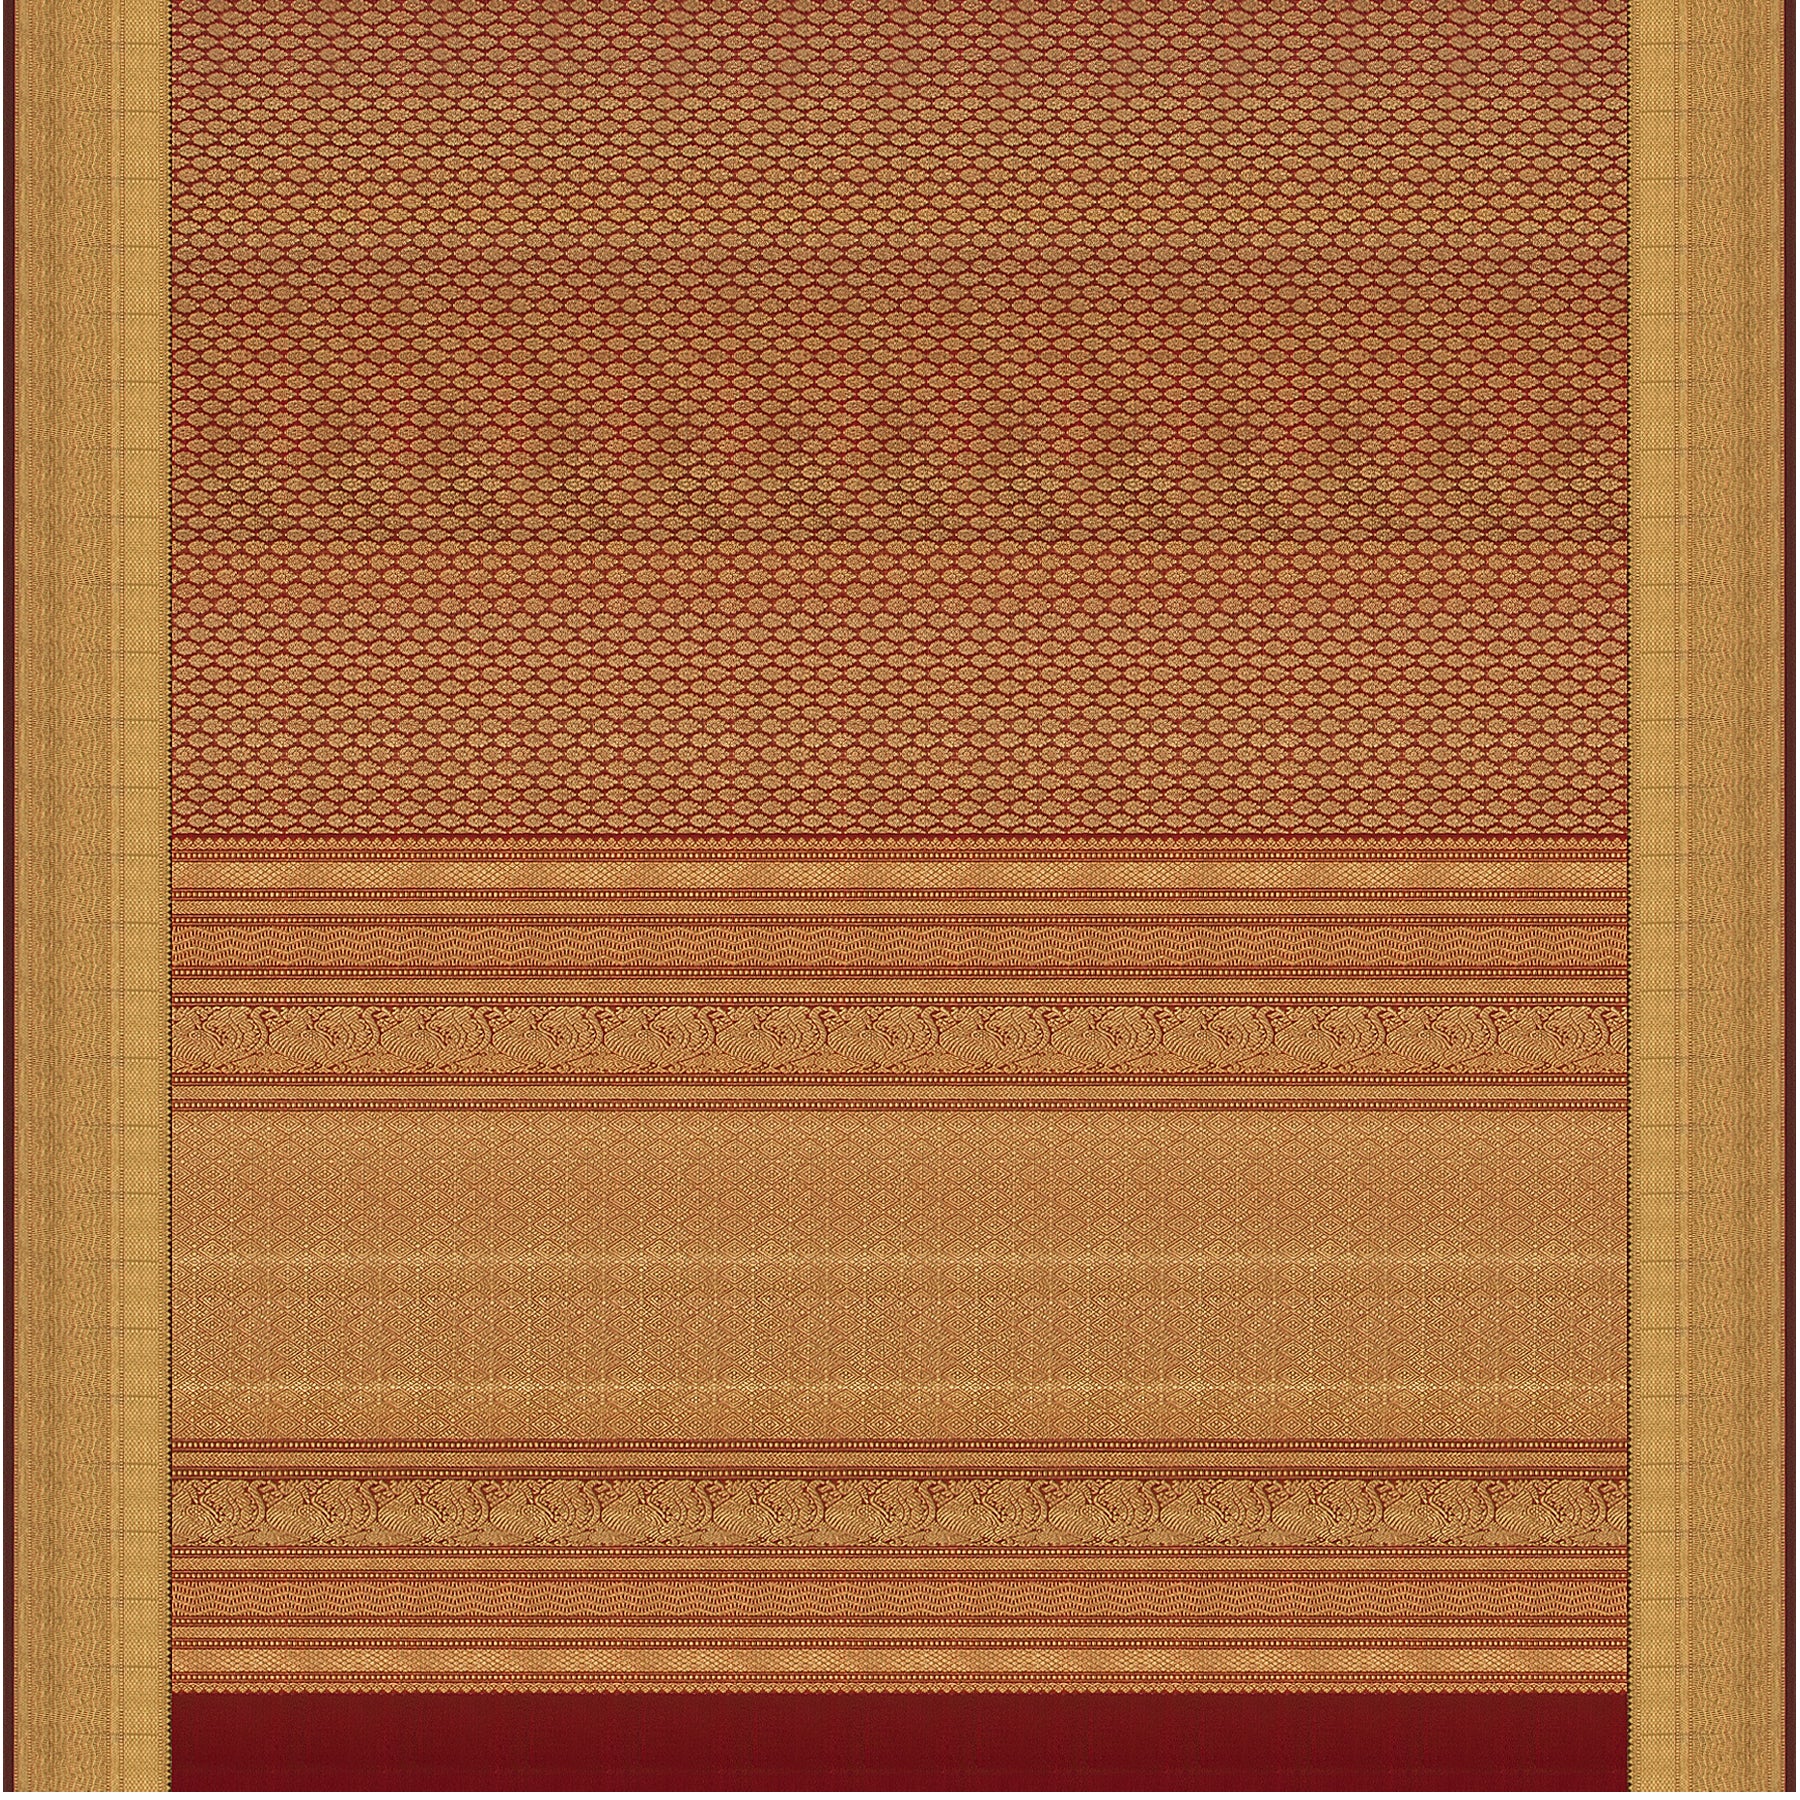 Kanakavalli Kanjivaram Silk Sari 21-100-HS001-01575 - Full View